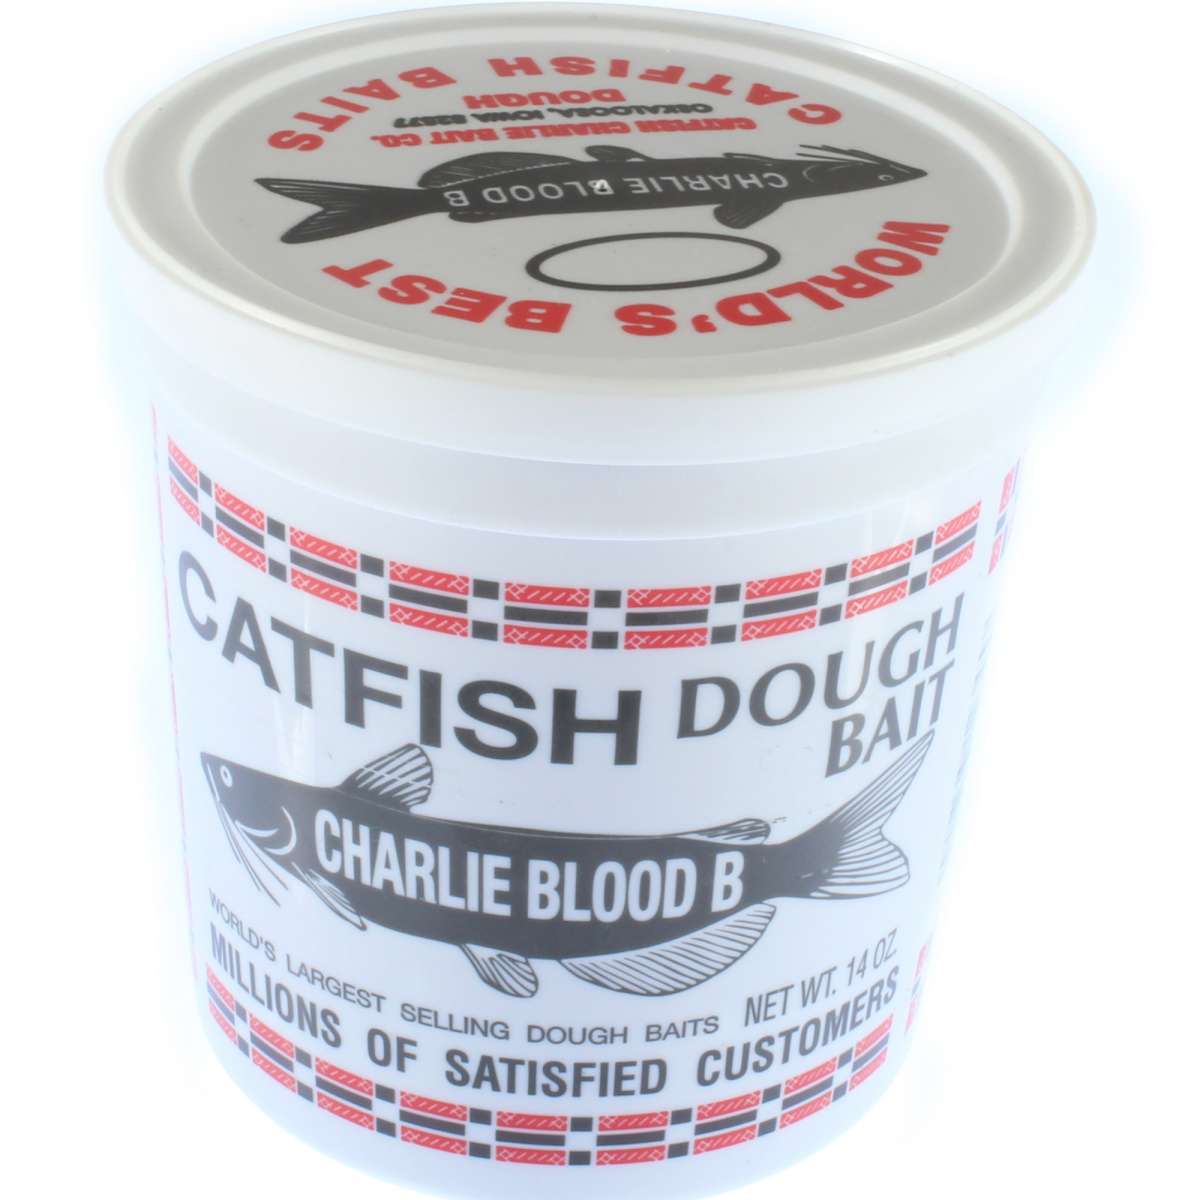 Catfish Charlie 14 oz. Blood B Catfish Dough Bait, 14 oz.